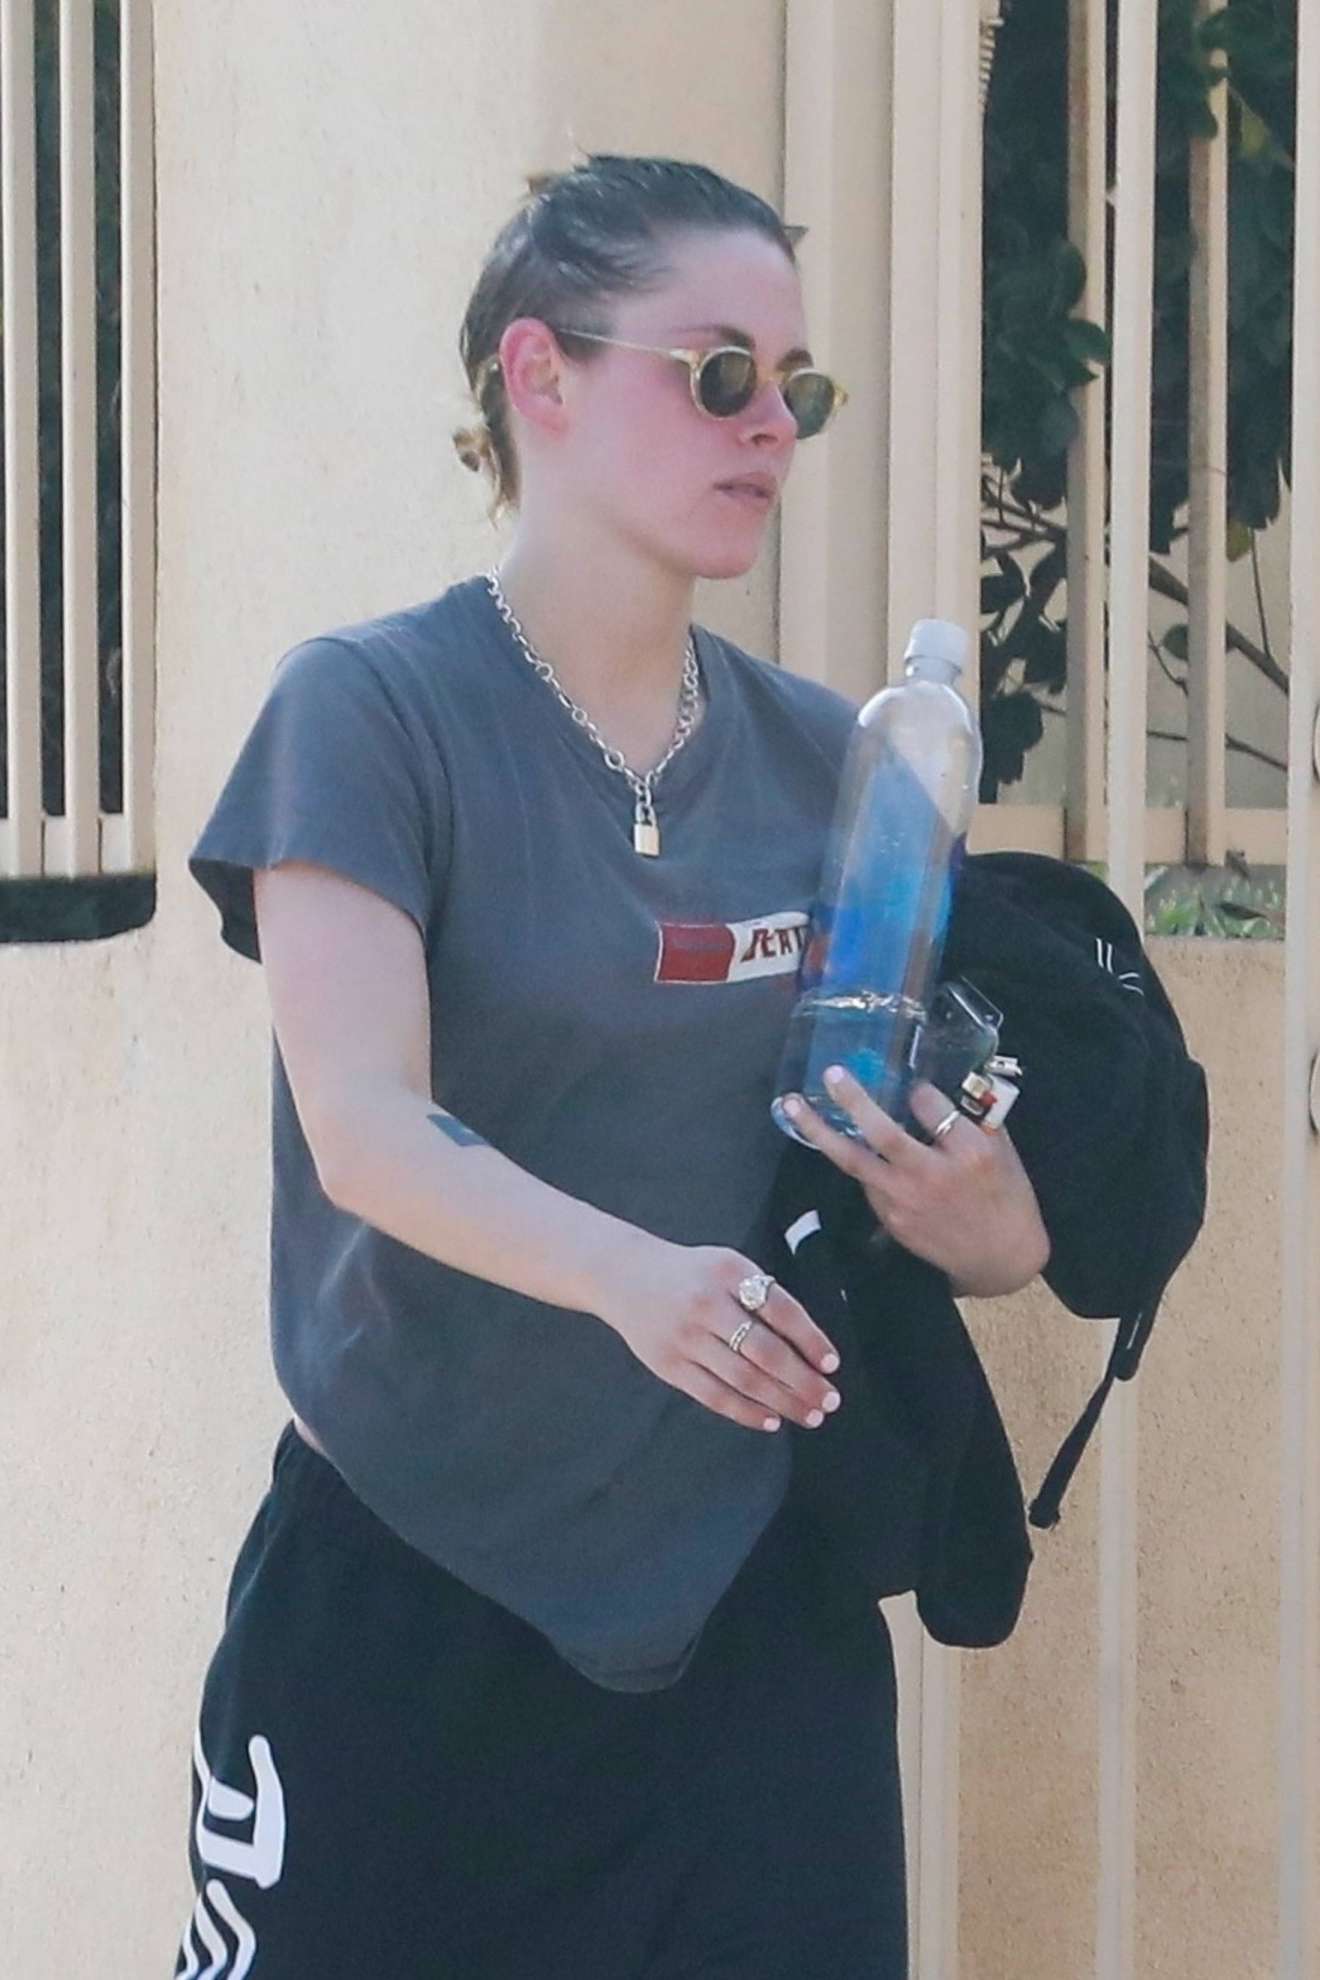 Kristen Stewart â€“ Spotted leaving a spa with a friend in LA